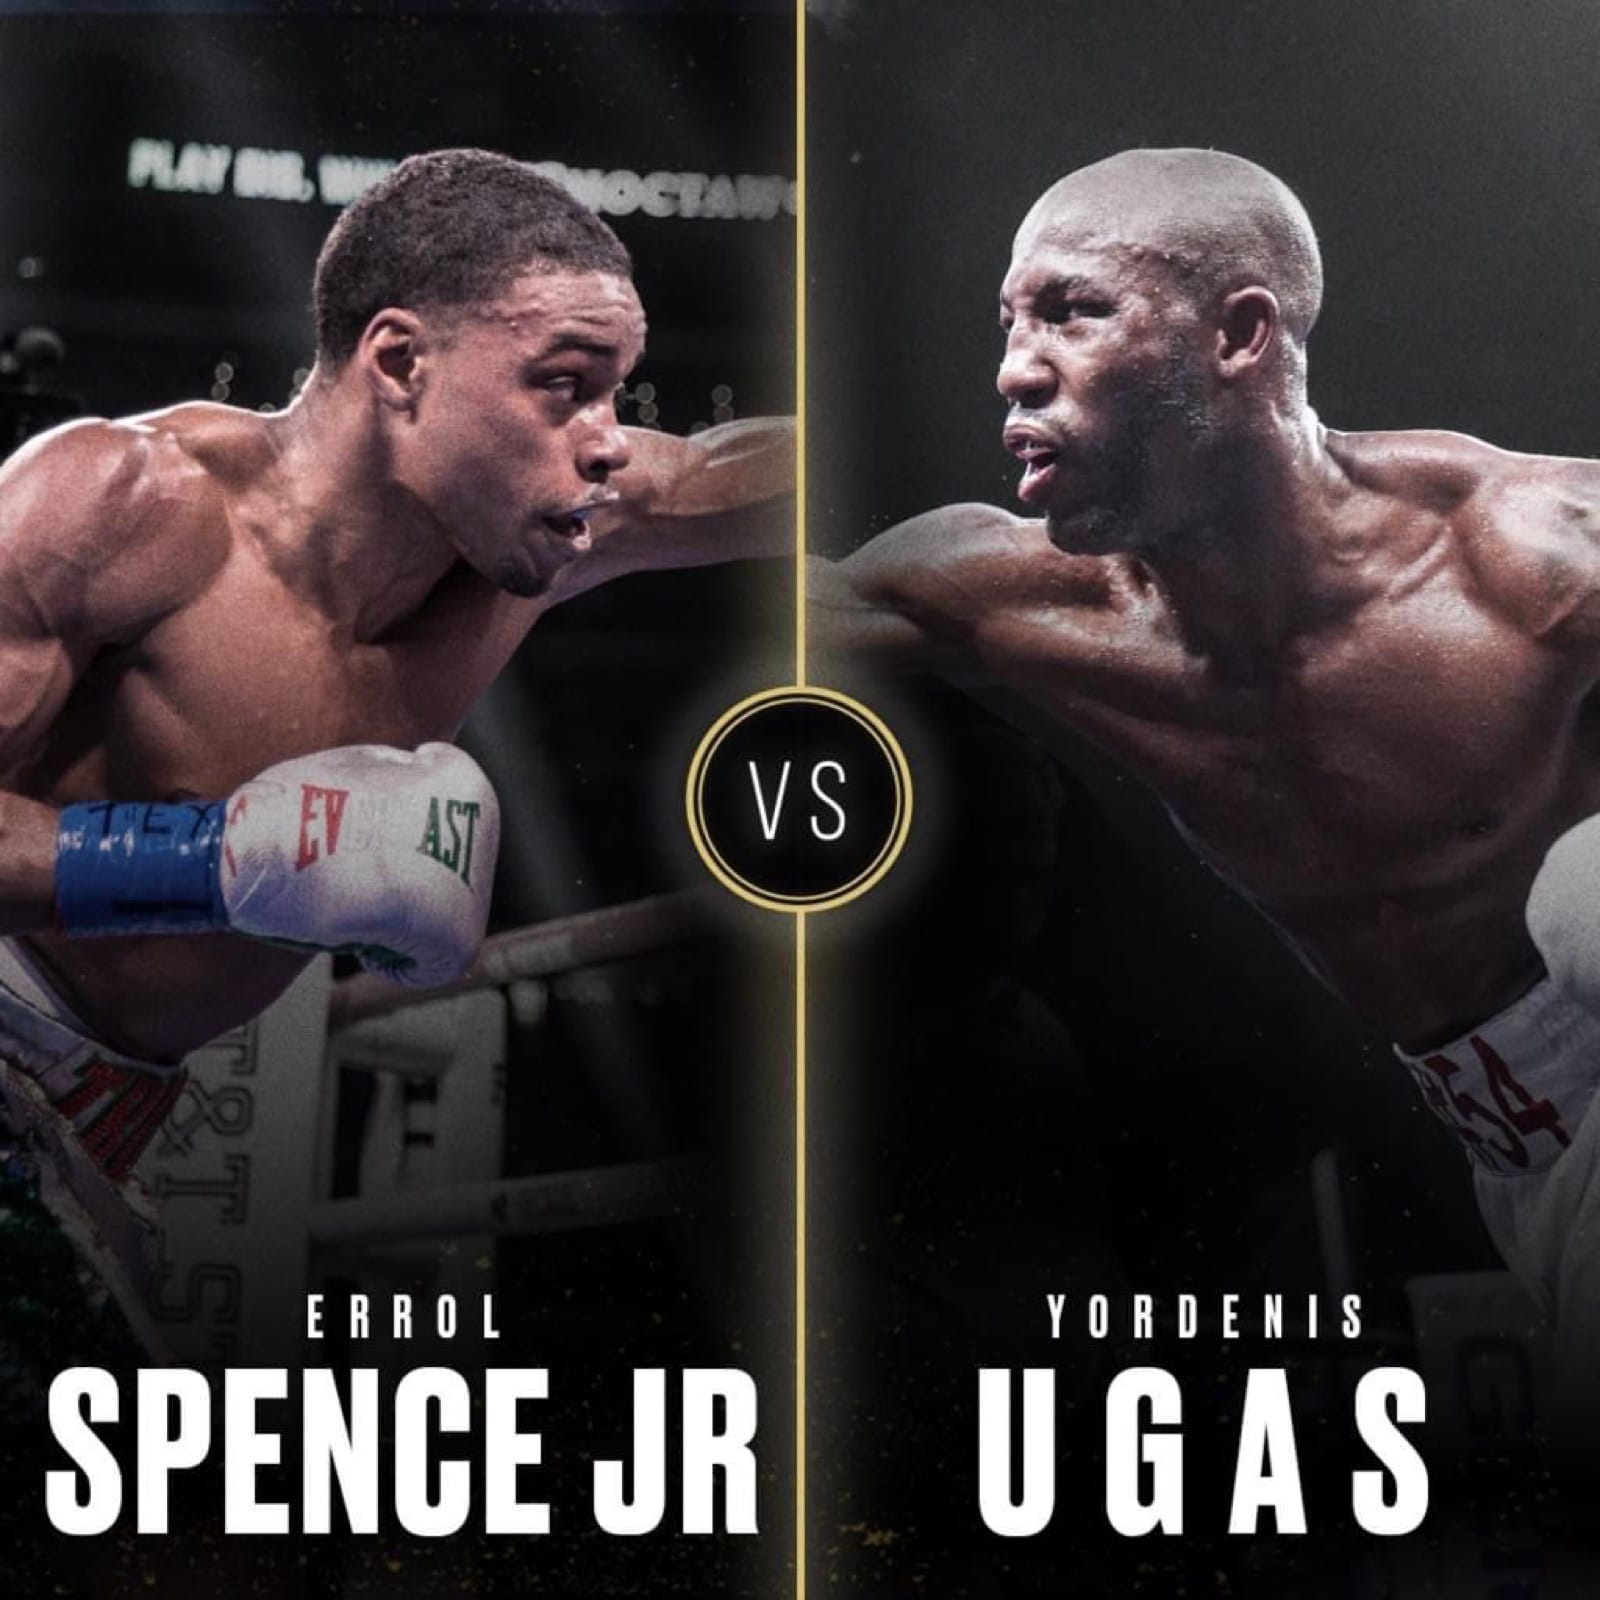 Errol Spence, Terence Crawford, Yordenis Ugas boxing image / photo